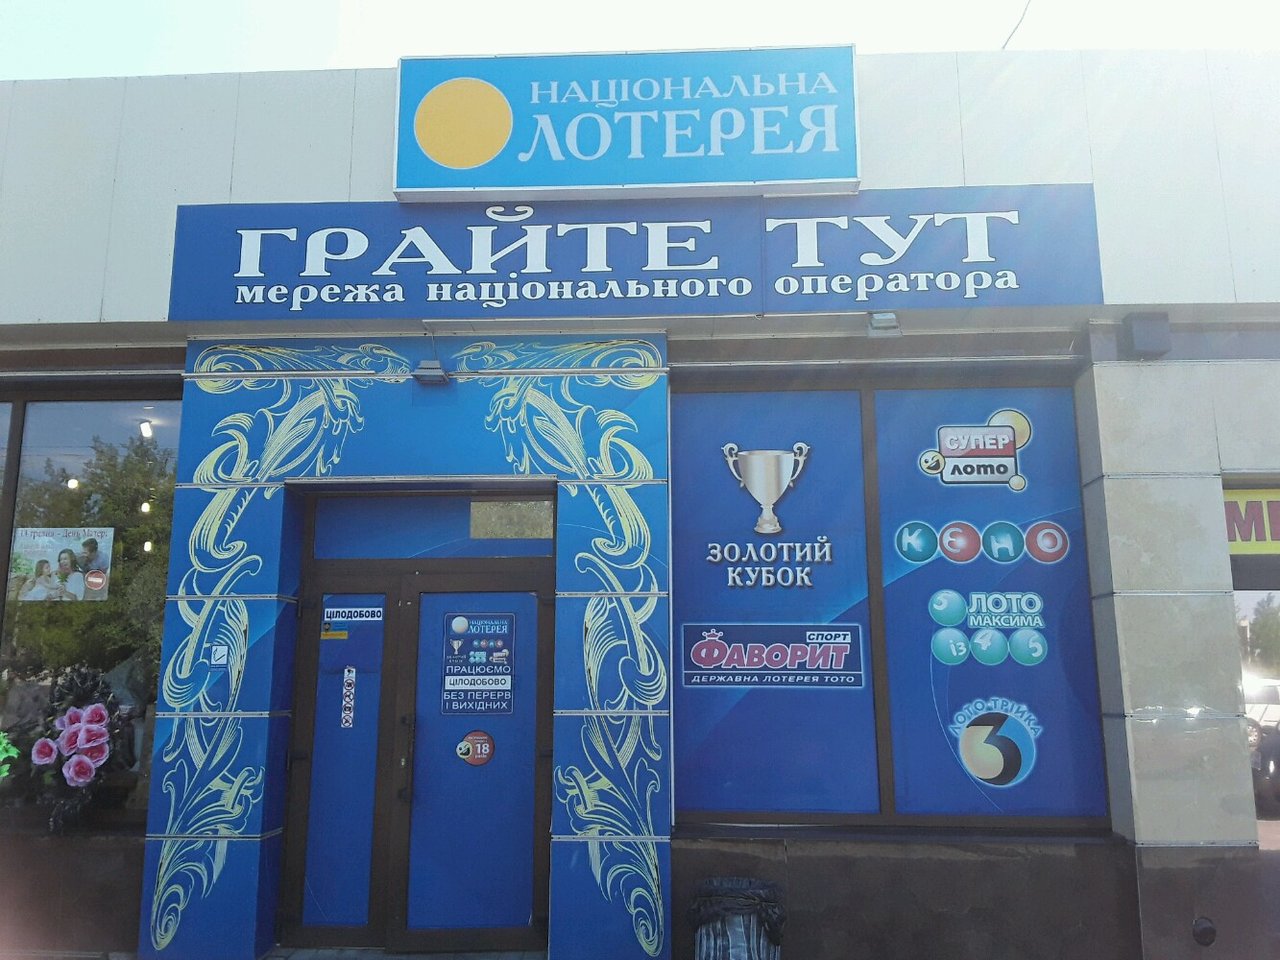 1 национальная лотерея. Национальная лотерея. Украинская Национальная лотерея. Национальная лотерея фото. Национальная лотерея Украины картинки.